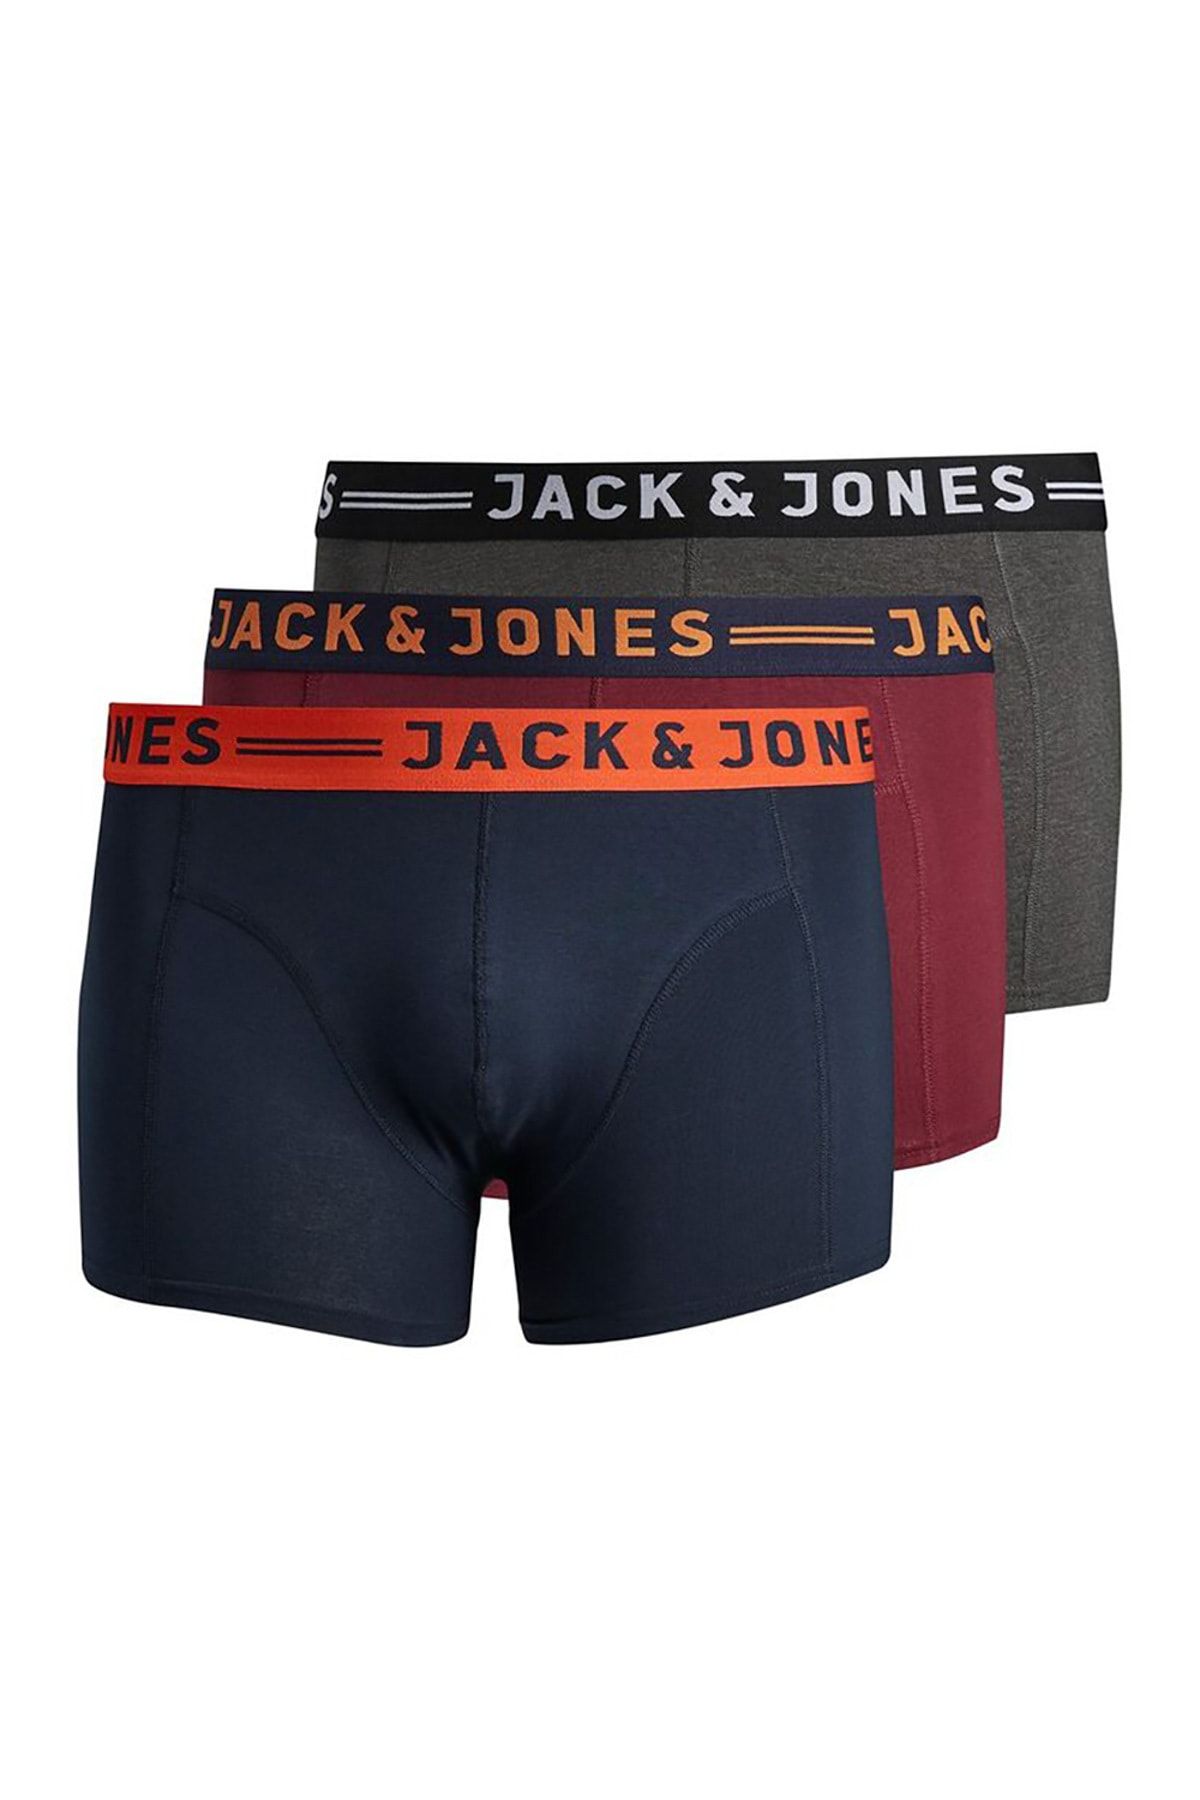 Jack & Jones Lichfield Erkek 3Lü Boxer (12147592-BUR)